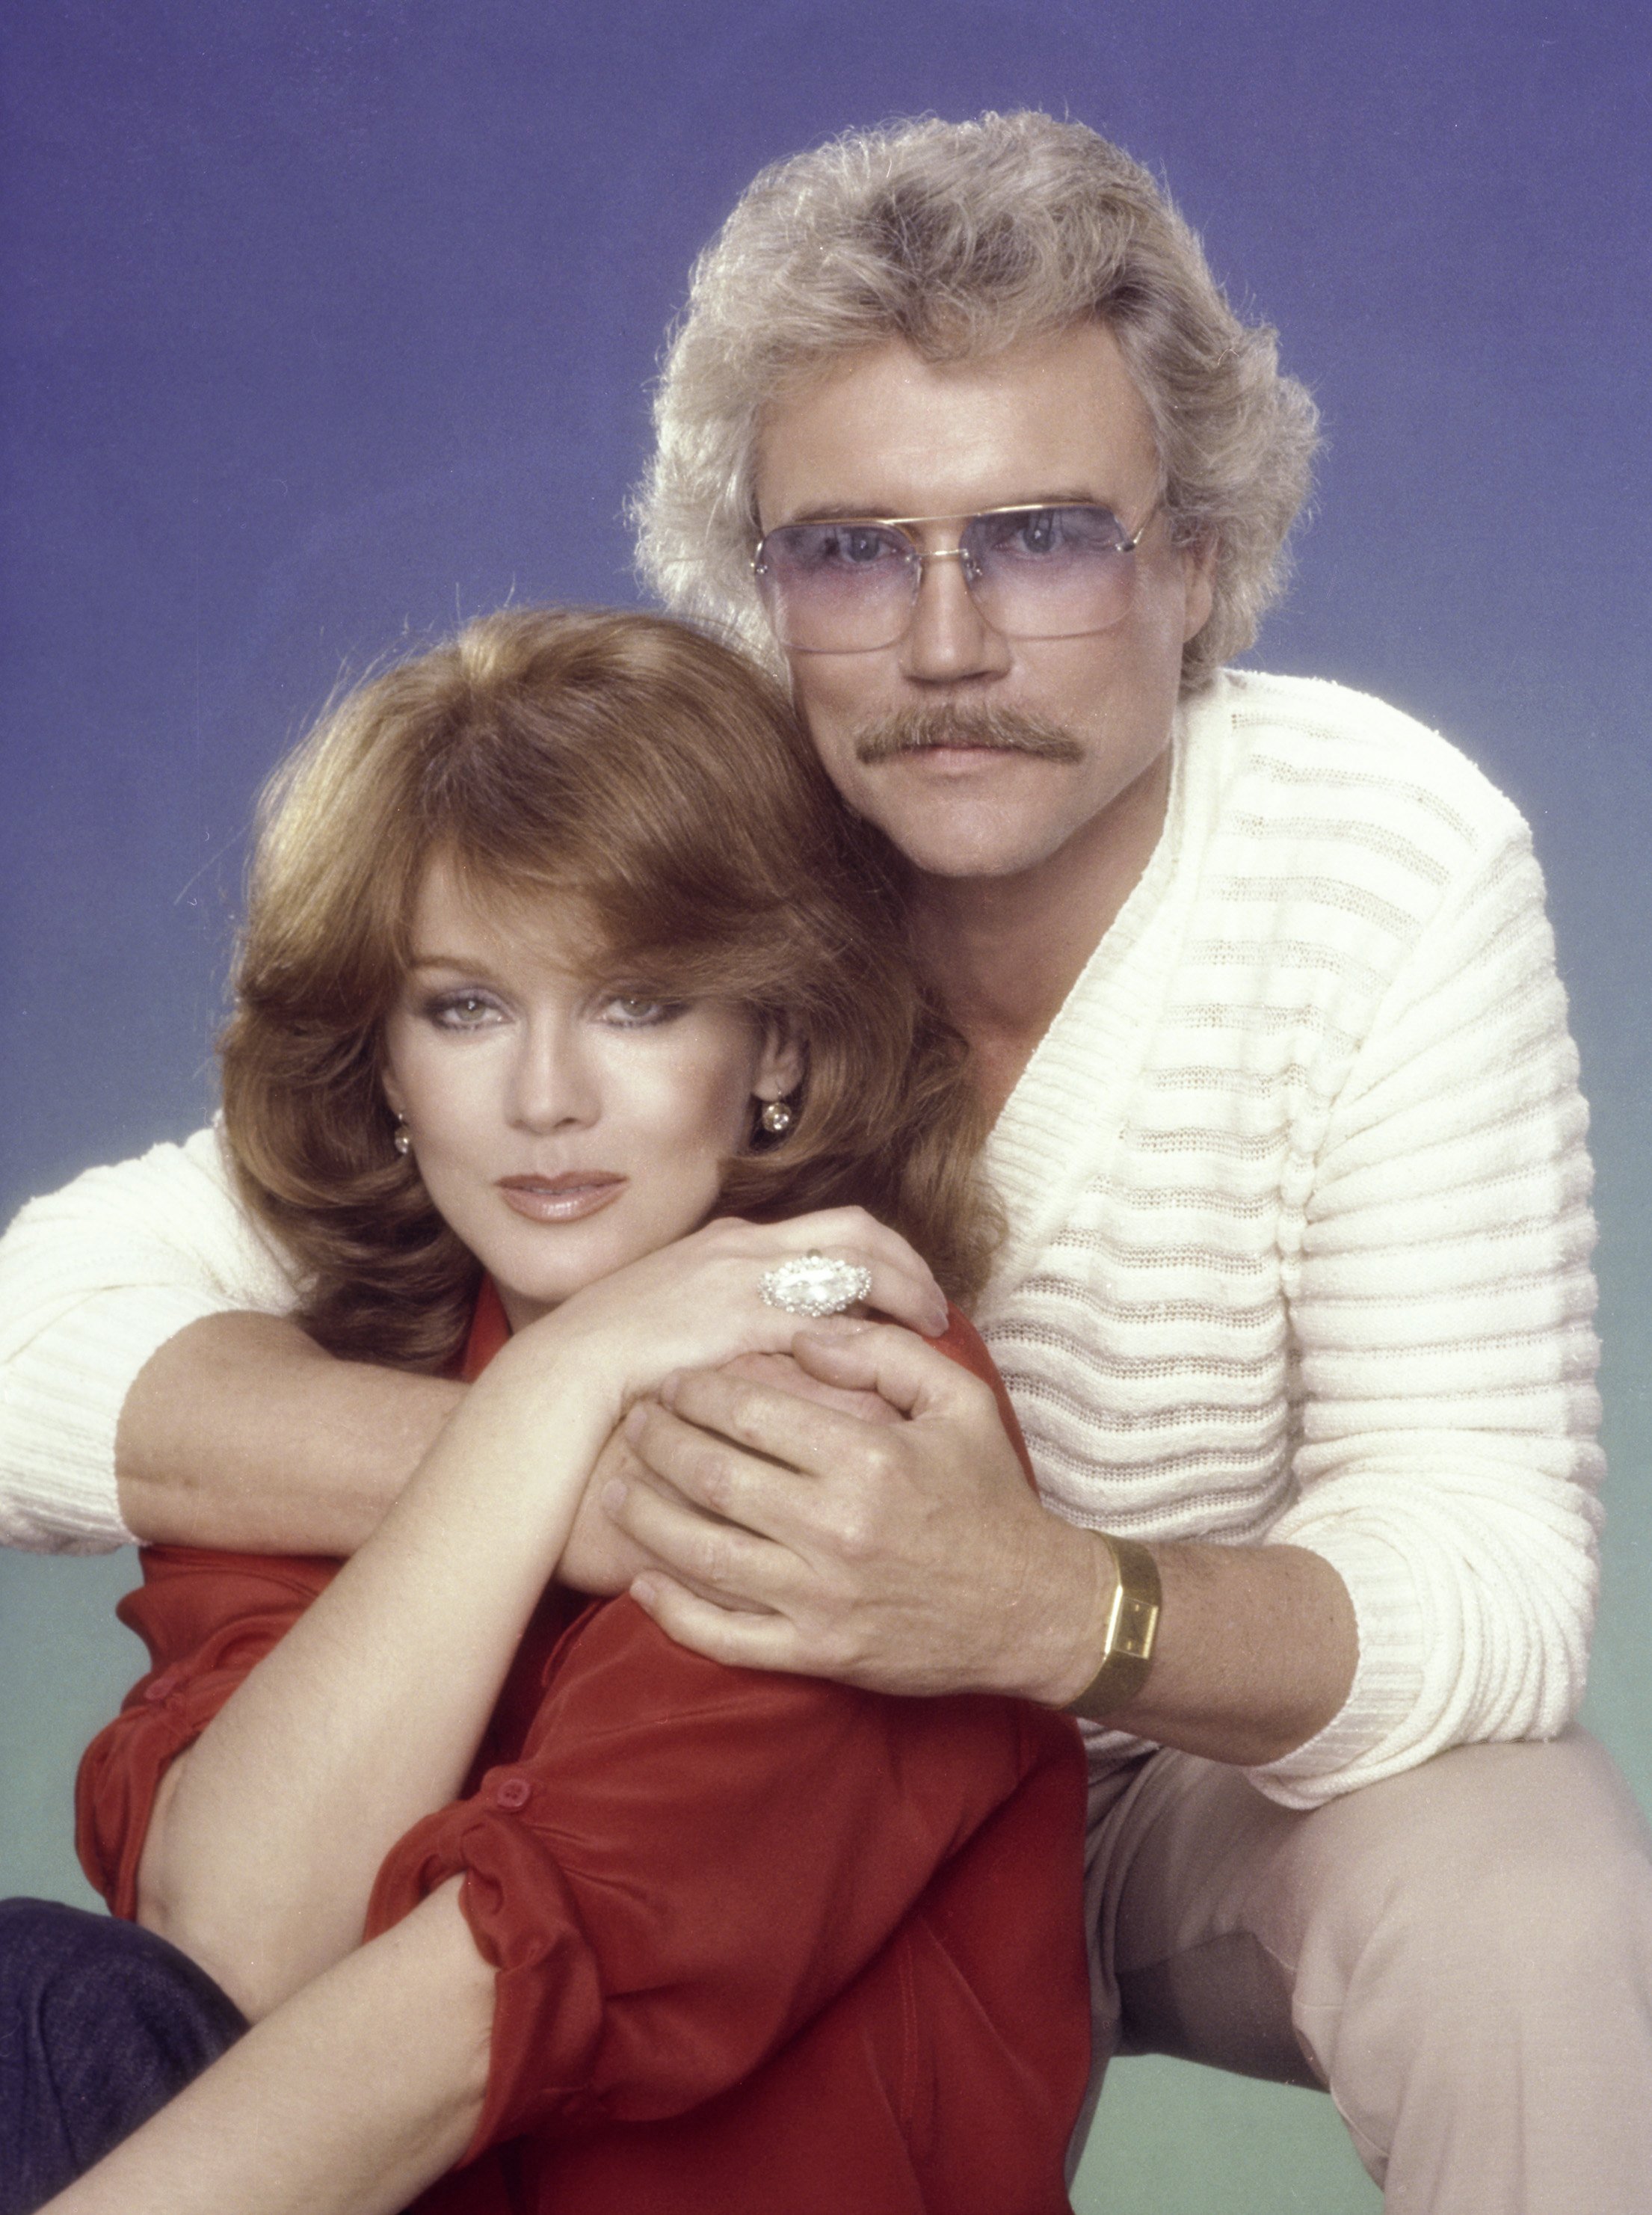 Ann-Margret et son mari Roger smith posent pour un portrait en 1980 à Los Angeles, Californie. | Source : Getty Images